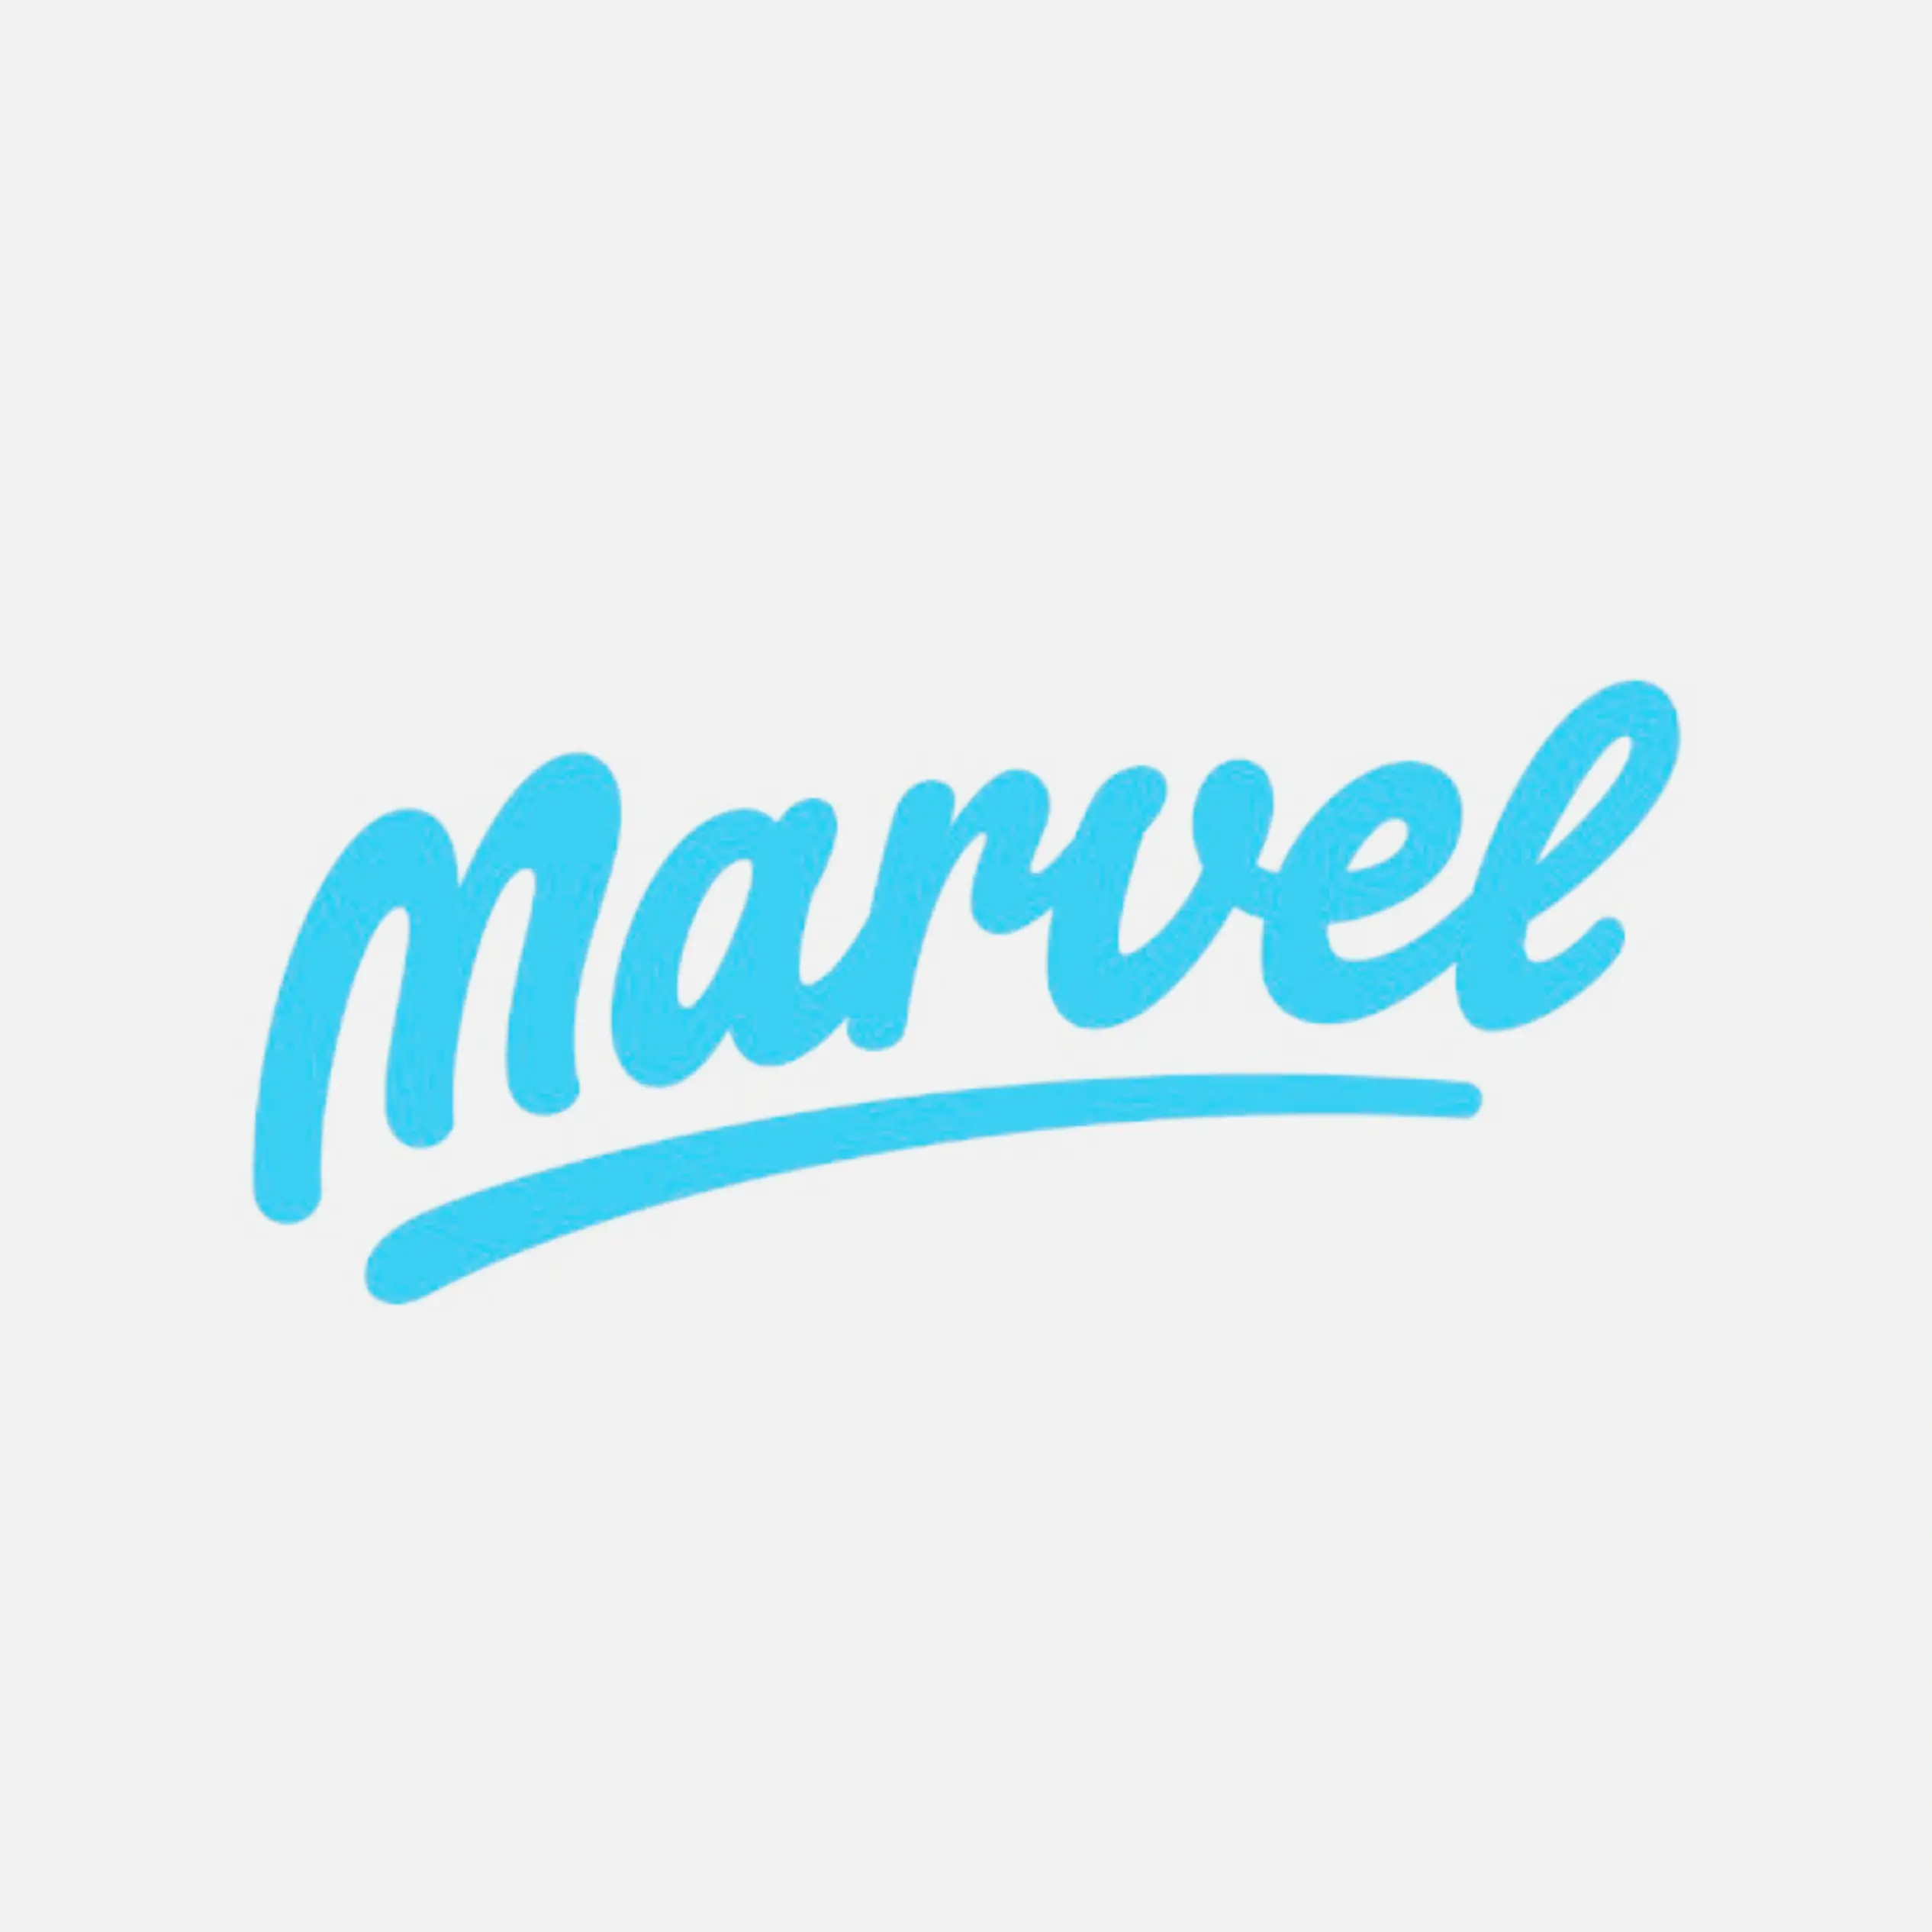 Marvel Tutorials logo